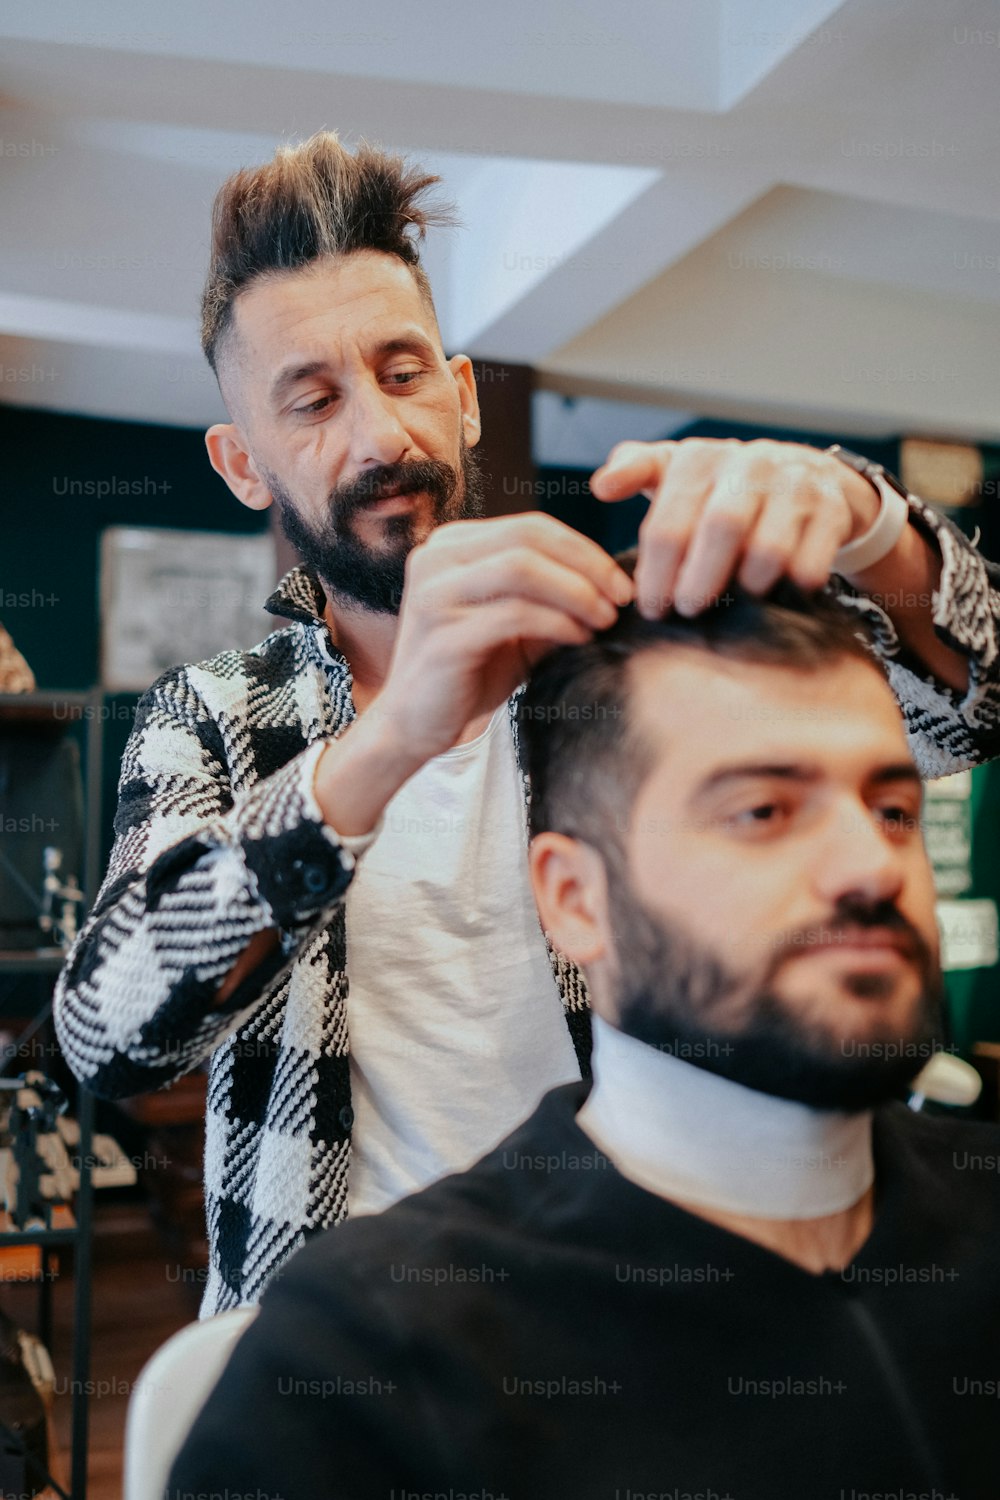 Un homme coupe les cheveux d’un autre homme dans un salon de coiffure